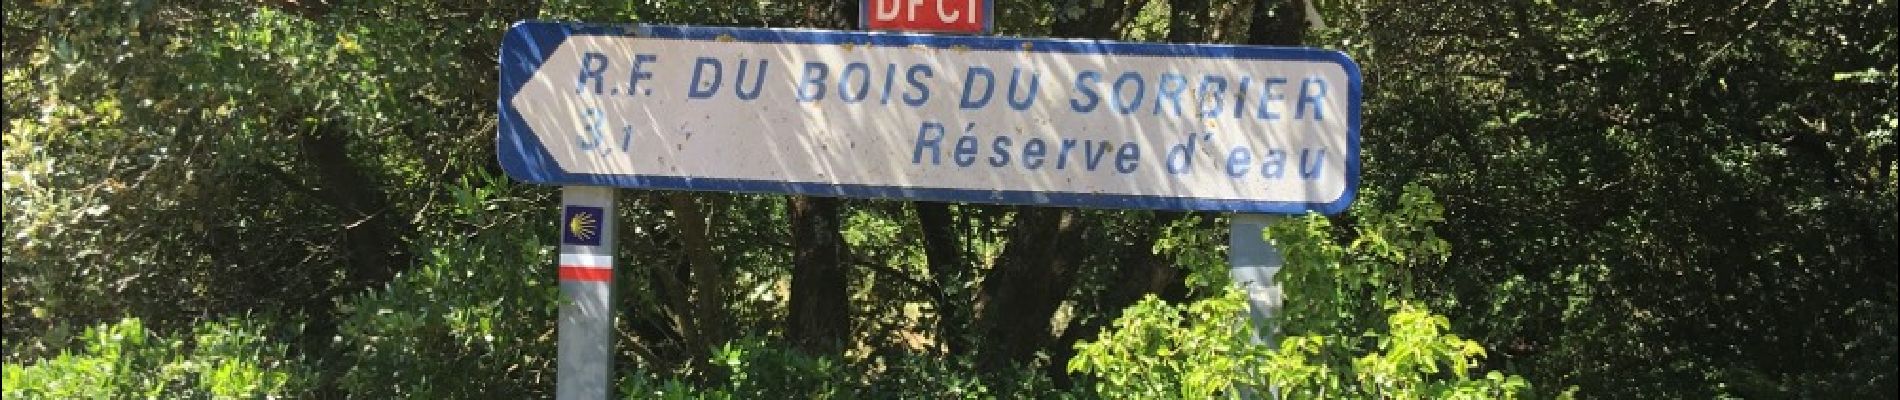 Point of interest Bourg-Saint-Andéol - vers une réserve d'eau - Photo